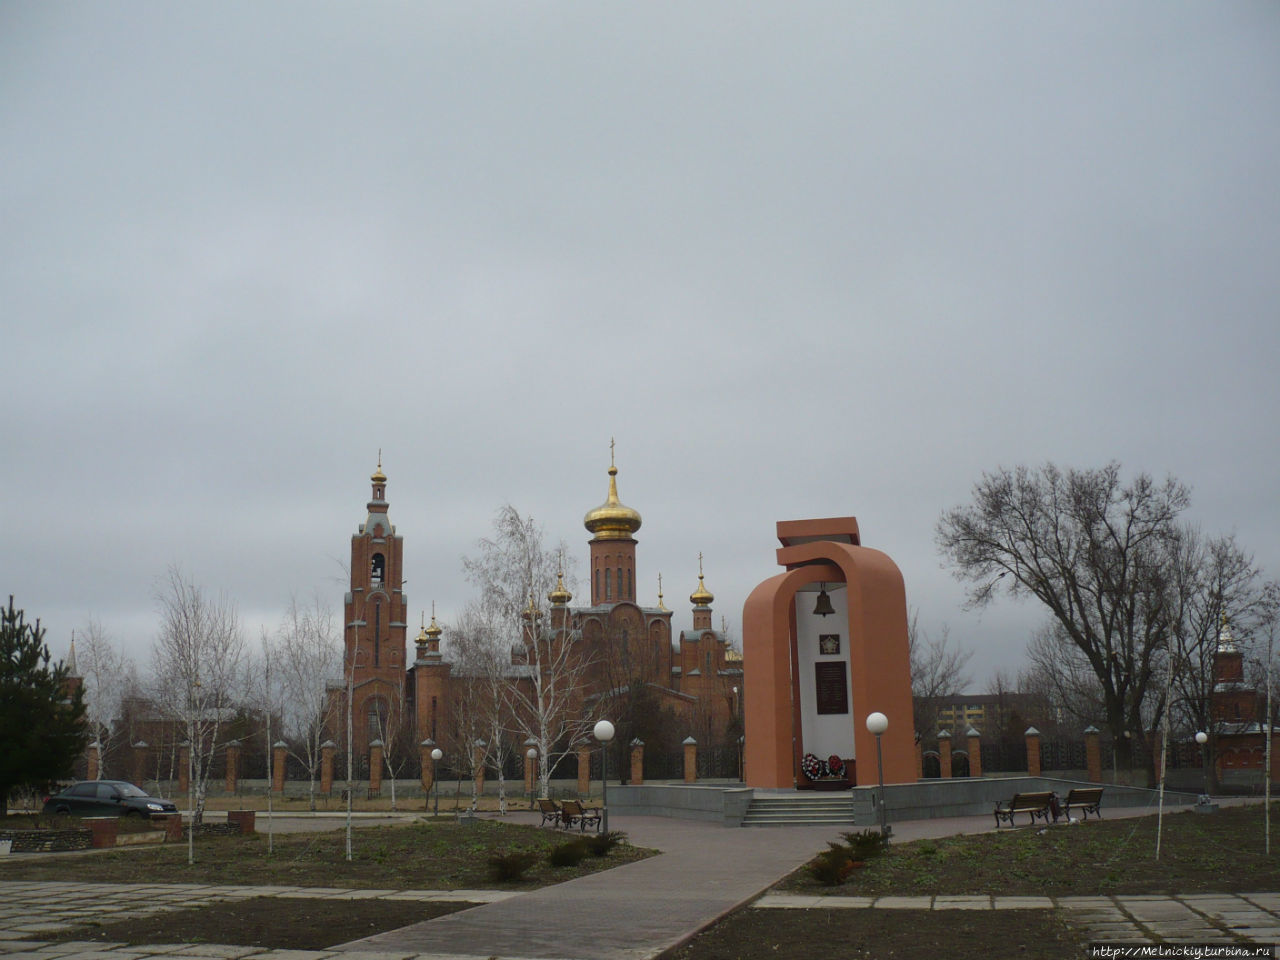 Памятник воинам-интернационалистам и чернобыльцам / Monument to internationalists and Chernobyl